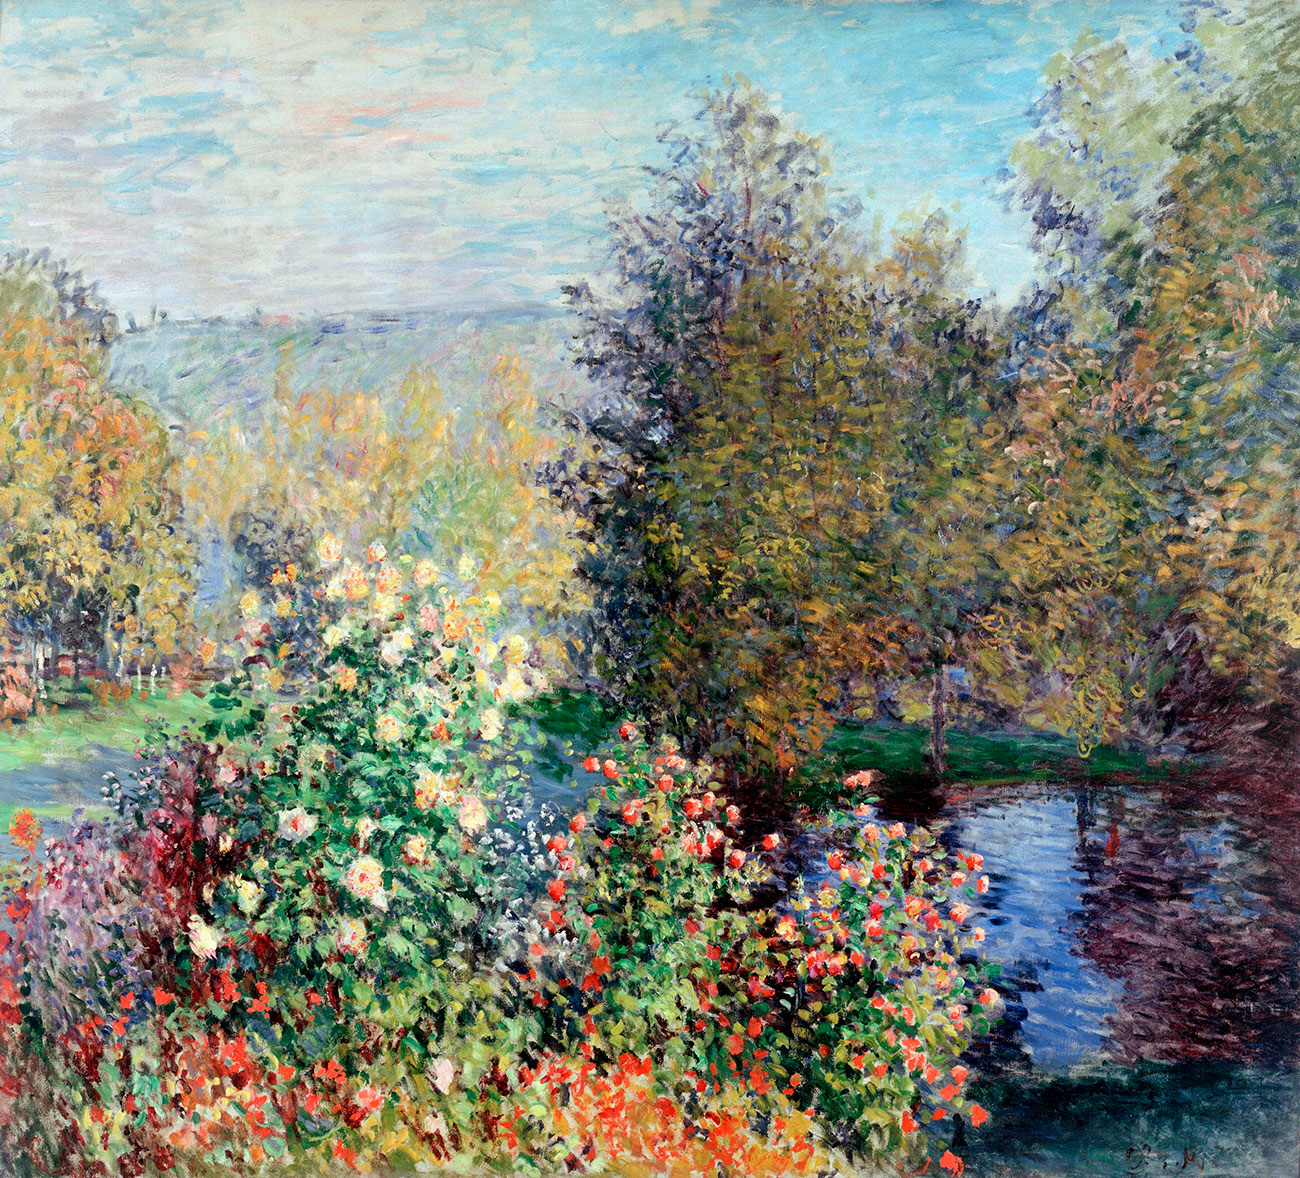  Ayant dépensé 1,5 million de francs en art français en 11 ans, Morozov possédait 278 tableaux et 23 sculptures, sans oublier quelque 300 œuvres russes qu’il chérissait également. / Coin de jardin à Montgeron par Claude Monet